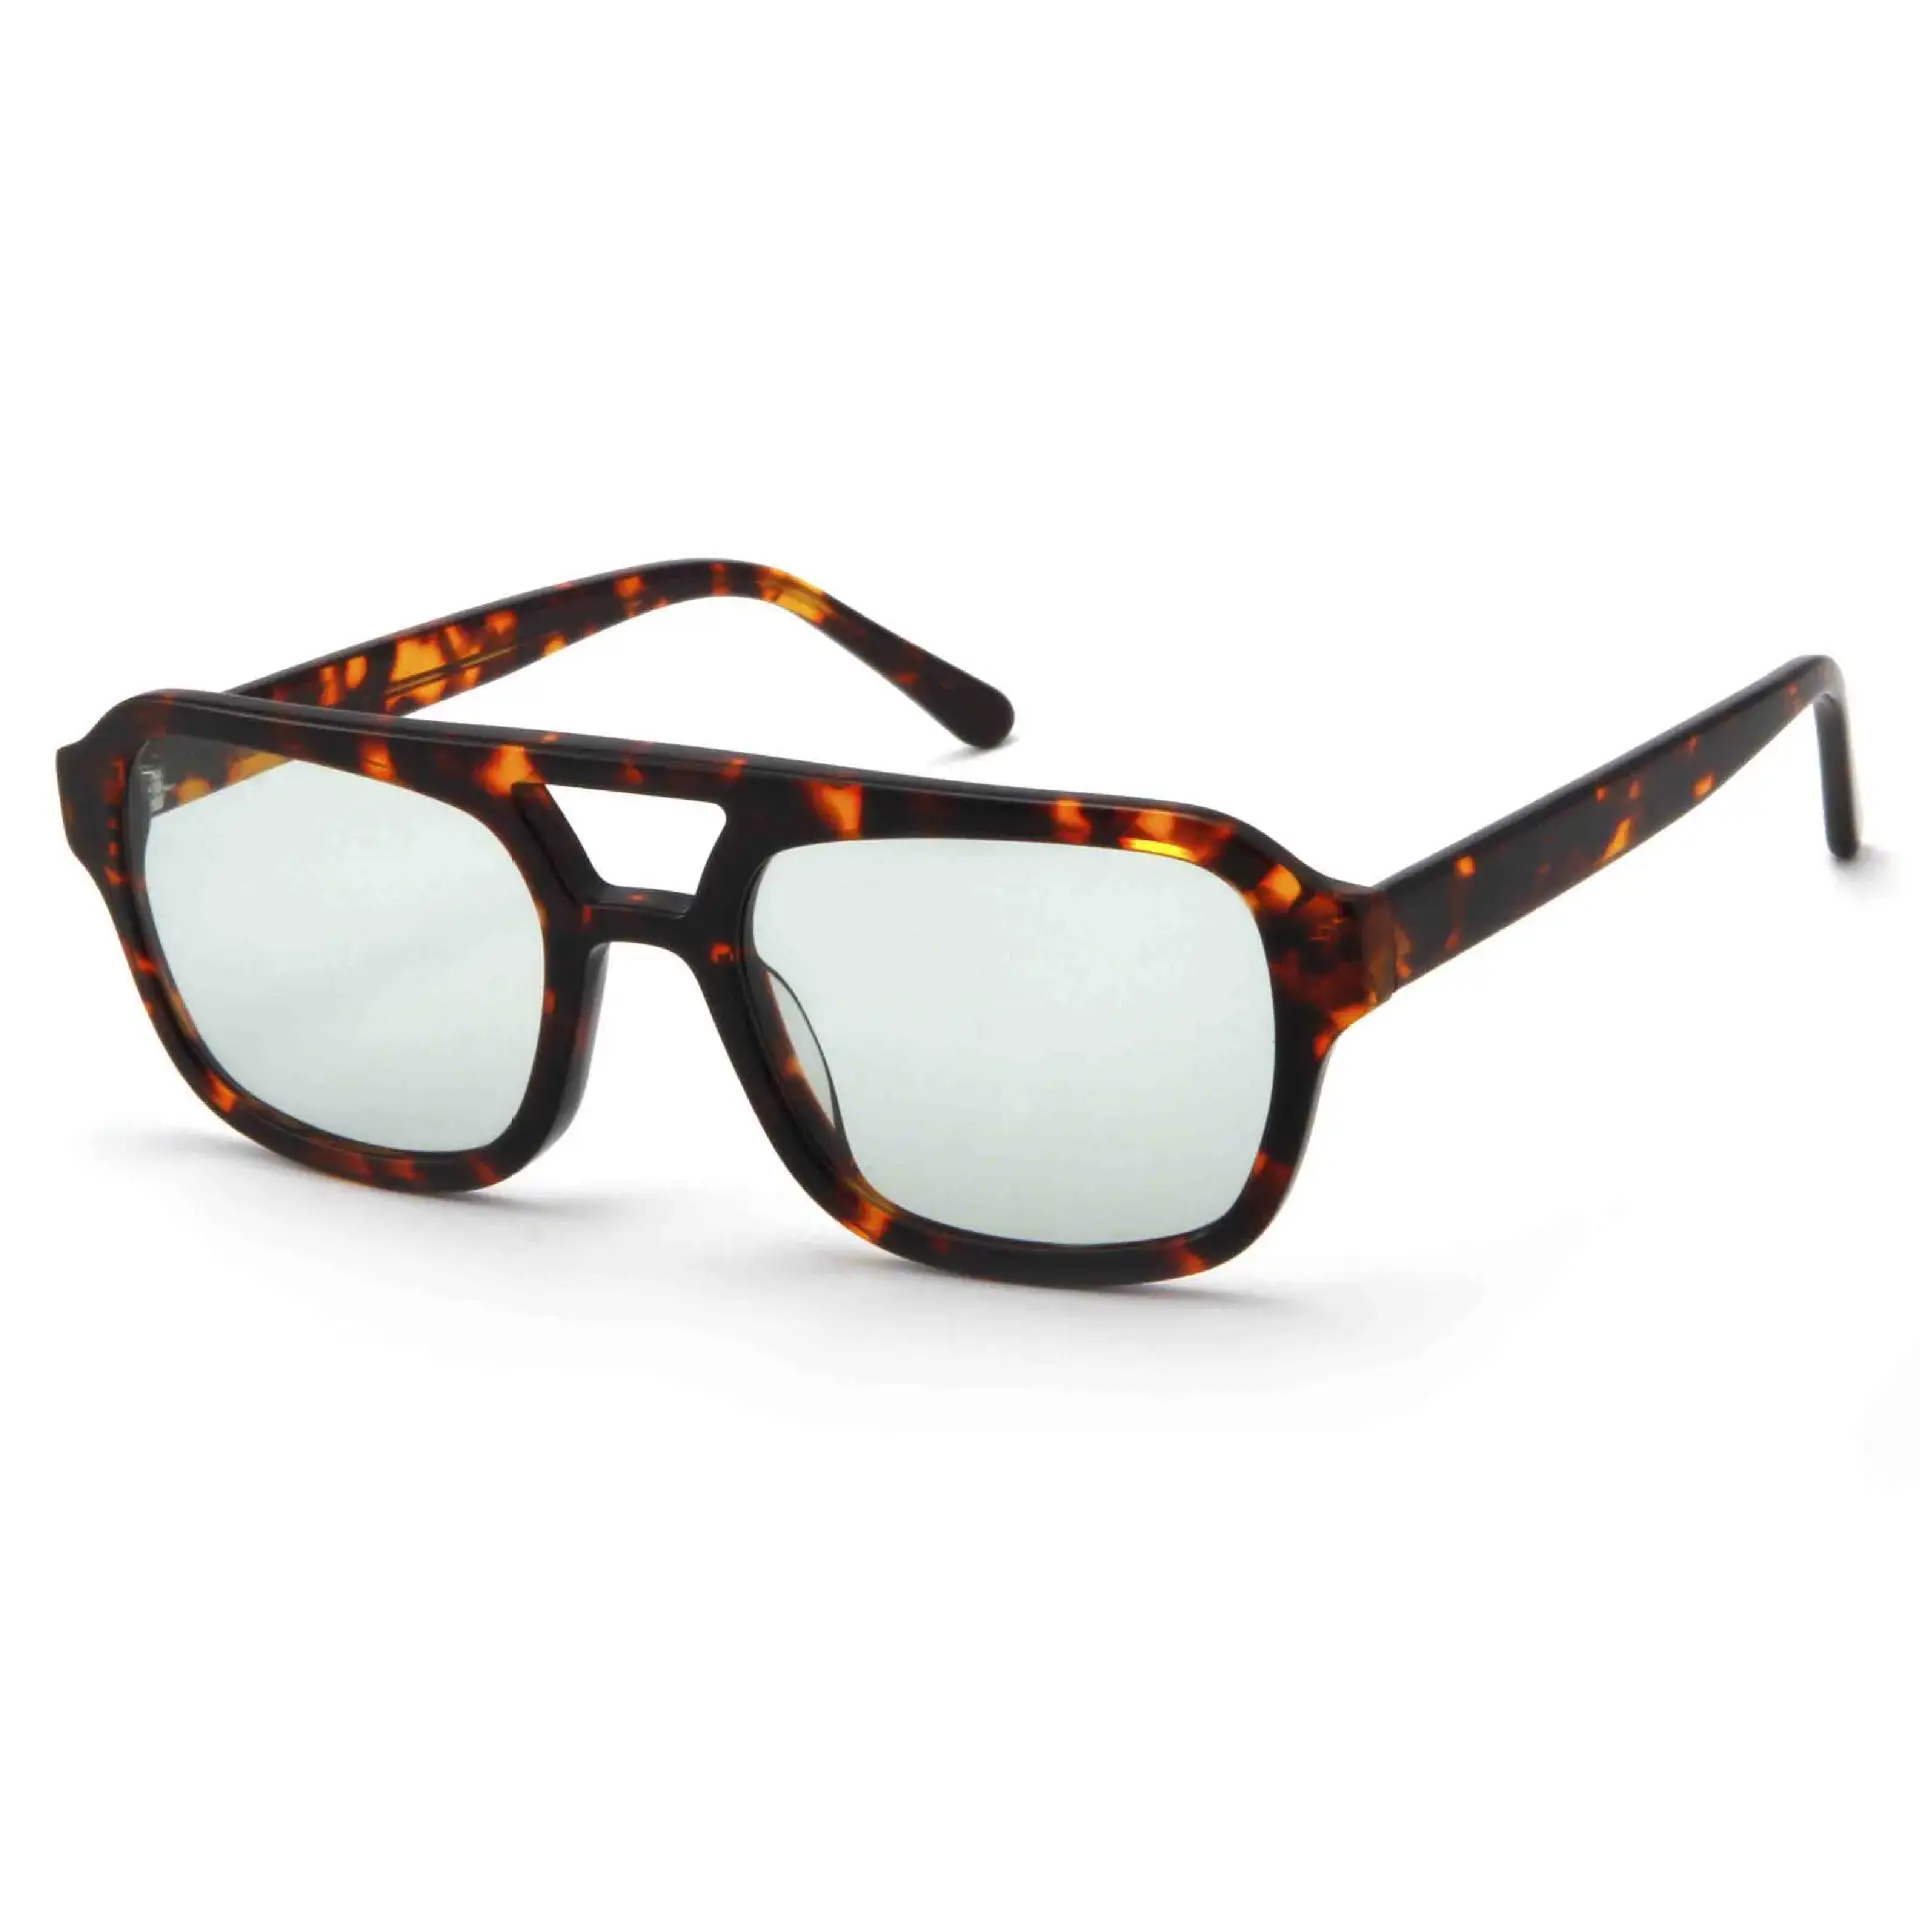 Retro Chất lượng cao lunettes de luxesun Kính phân cực người đàn ông cổ điển phụ nữ UV400 kính Đôi Chùm Acetate Khung kính mát